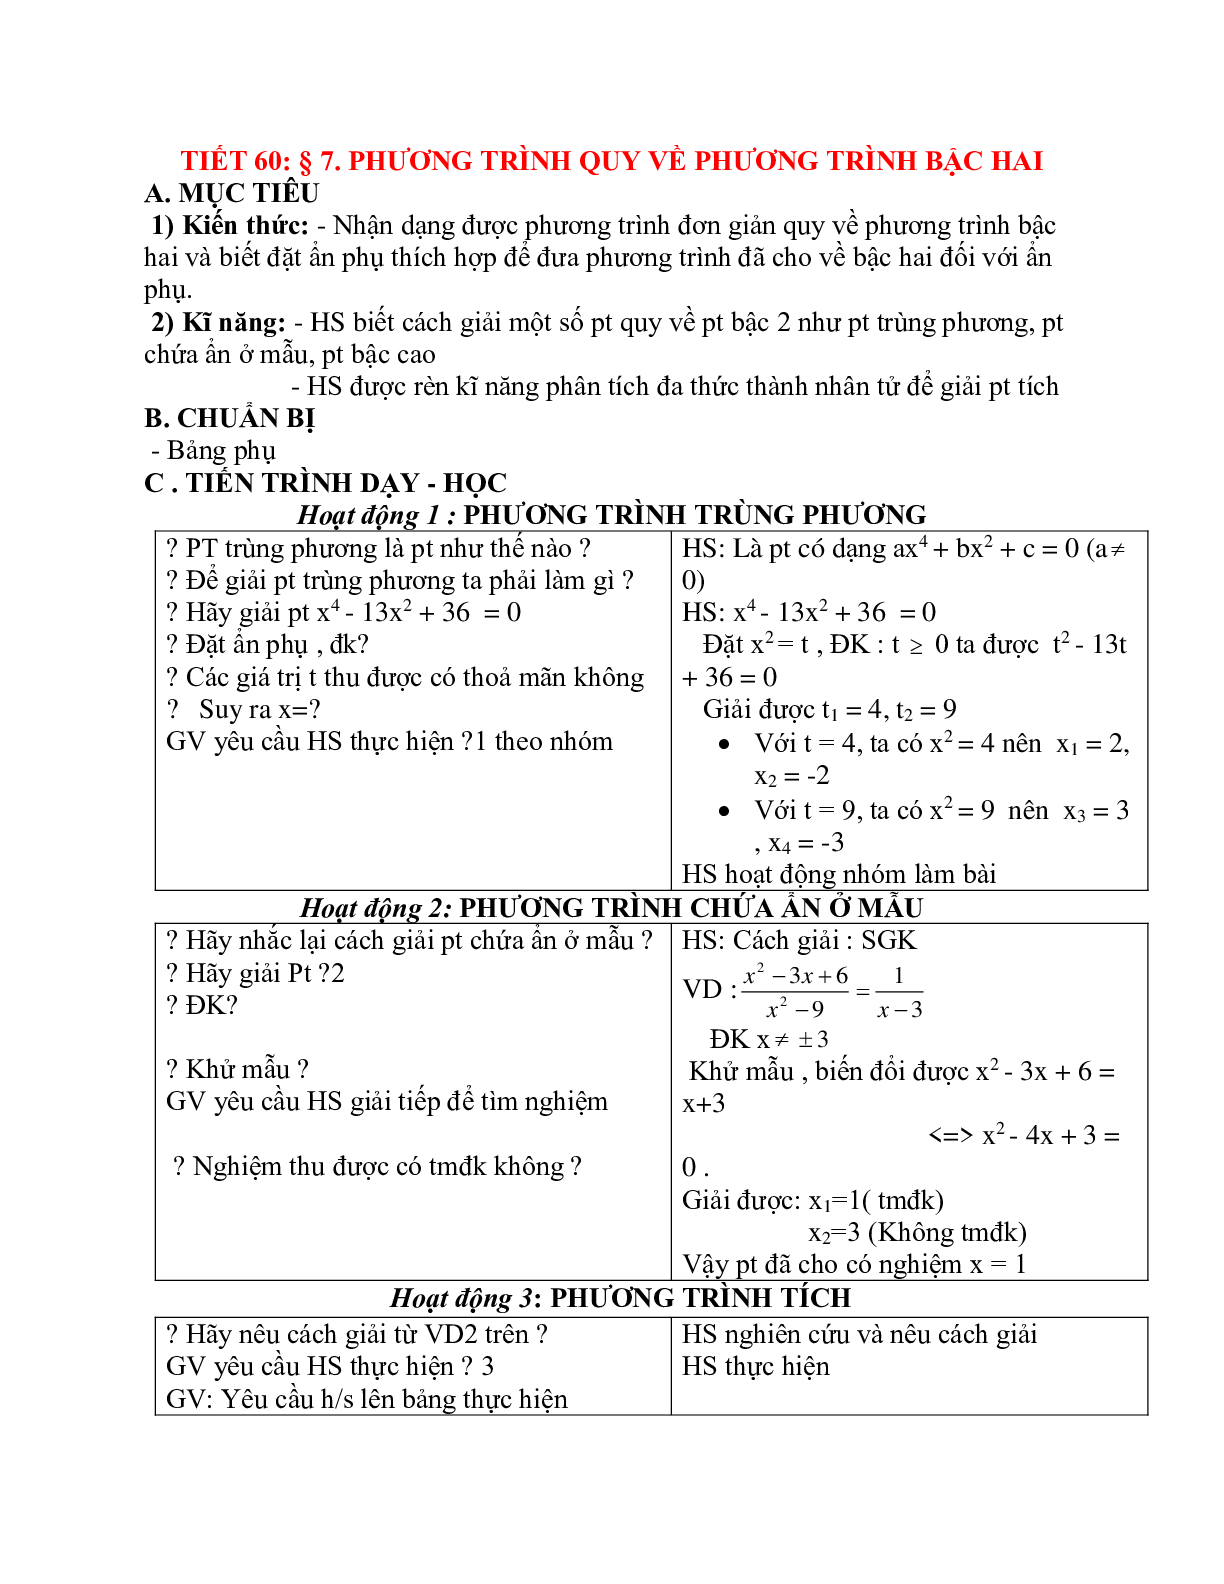 Giáo án Phương trình quy về phương trình bậc hai (2023) mới nhất - Toán 9 (trang 1)